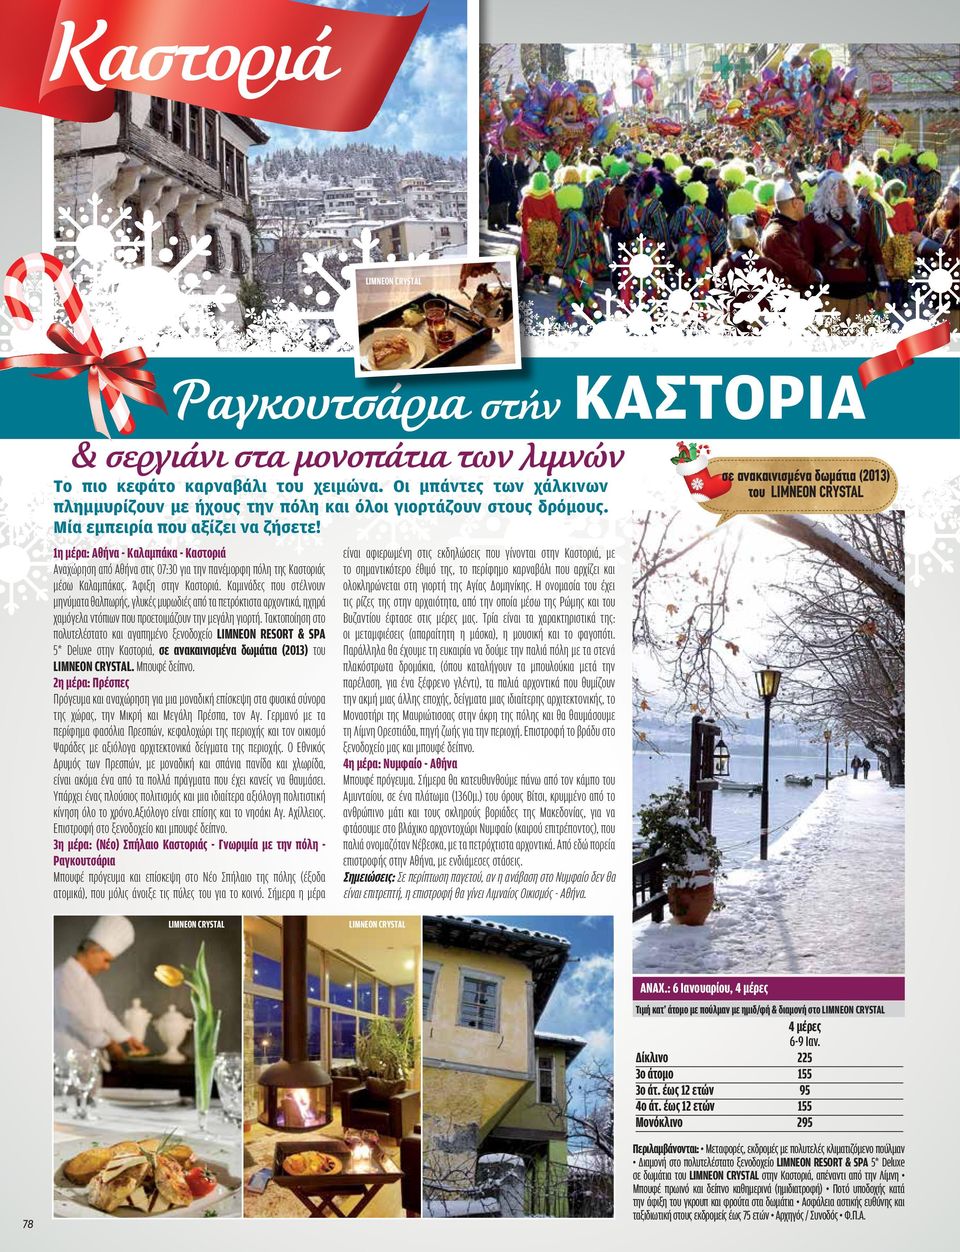 1η μέρα: Αθήνα - Καλαμπάκα - Καστοριά Αναχώρηση από Αθήνα στις 07:30 για την πανέμορφη πόλη της Καστοριάς μέσω Καλαμπάκας. Άφιξη στην Καστοριά.